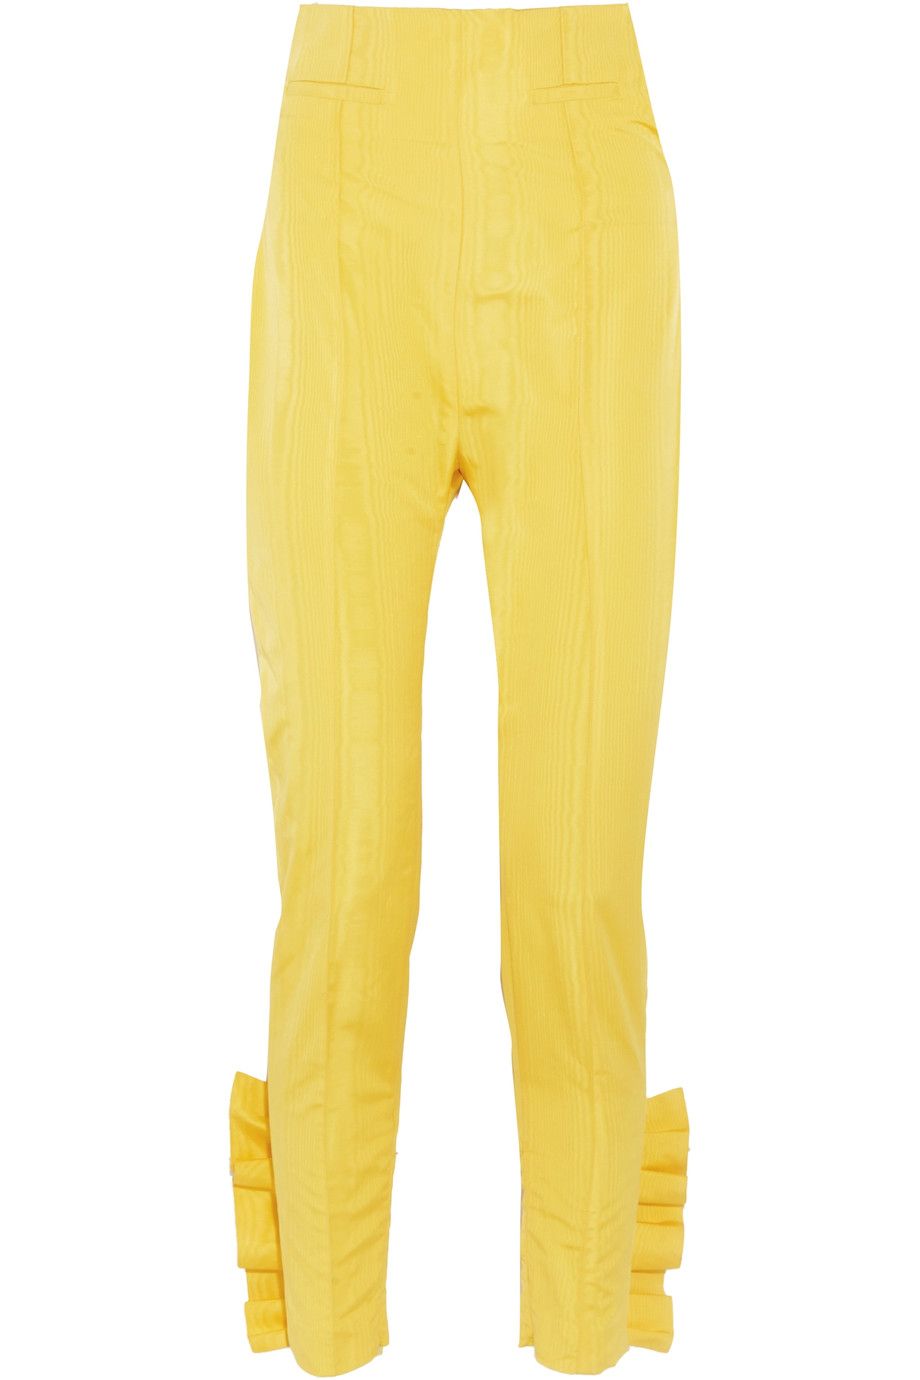 Festa della donna 2017: look giallo mimosa con pantaloni Carmen March